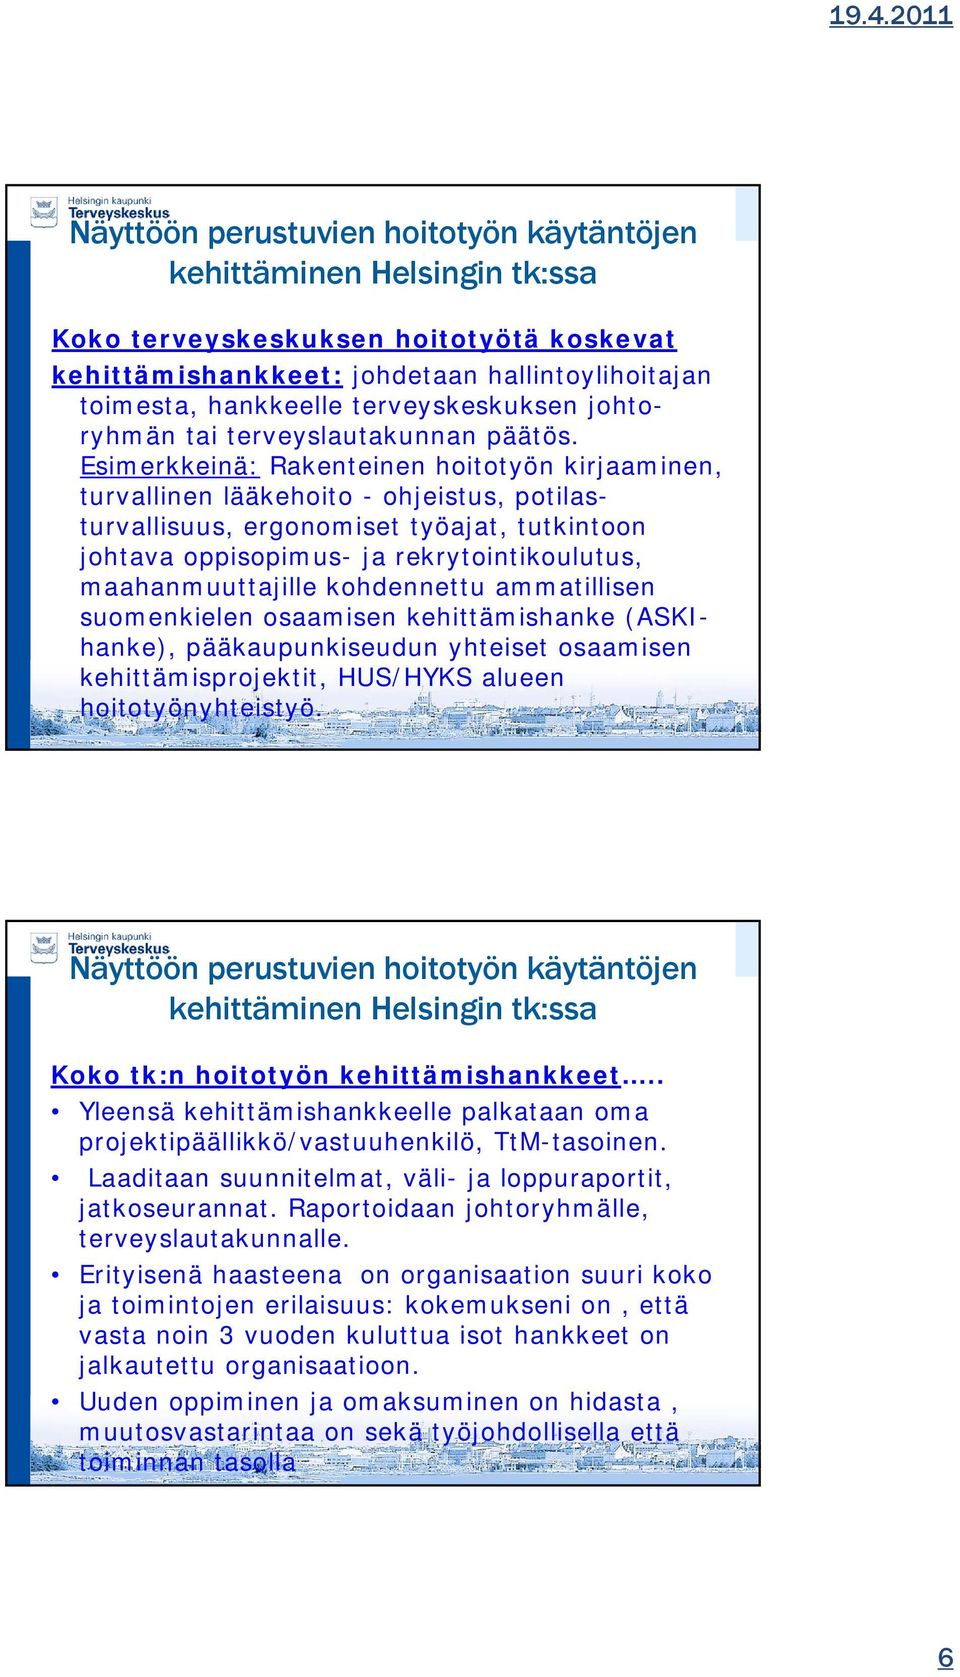 maahanmuuttajille kohdennettu ammatillisen suomenkielen osaamisen kehittämishanke (ASKIhanke), pääkaupunkiseudun yhteiset osaamisen kehittämisprojektit, HUS/HYKS alueen hoitotyönyhteistyö.